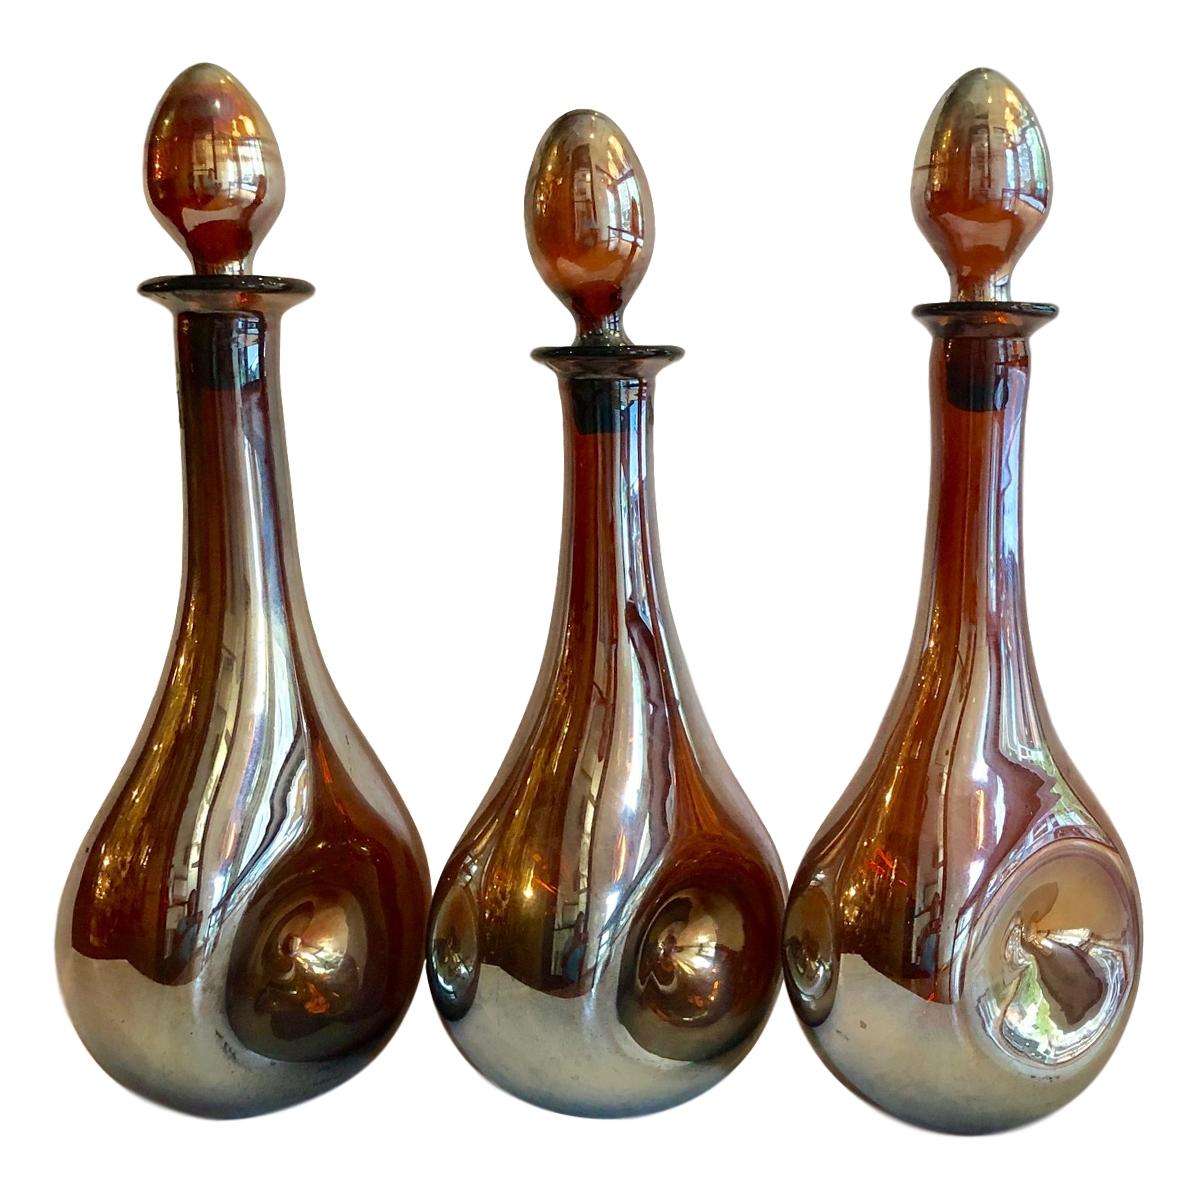 Un ensemble de trois décanteurs en verre irisé français des années 1940 avec bouchons. Vendu à l'unité.

Mesures :
Hauteur 17